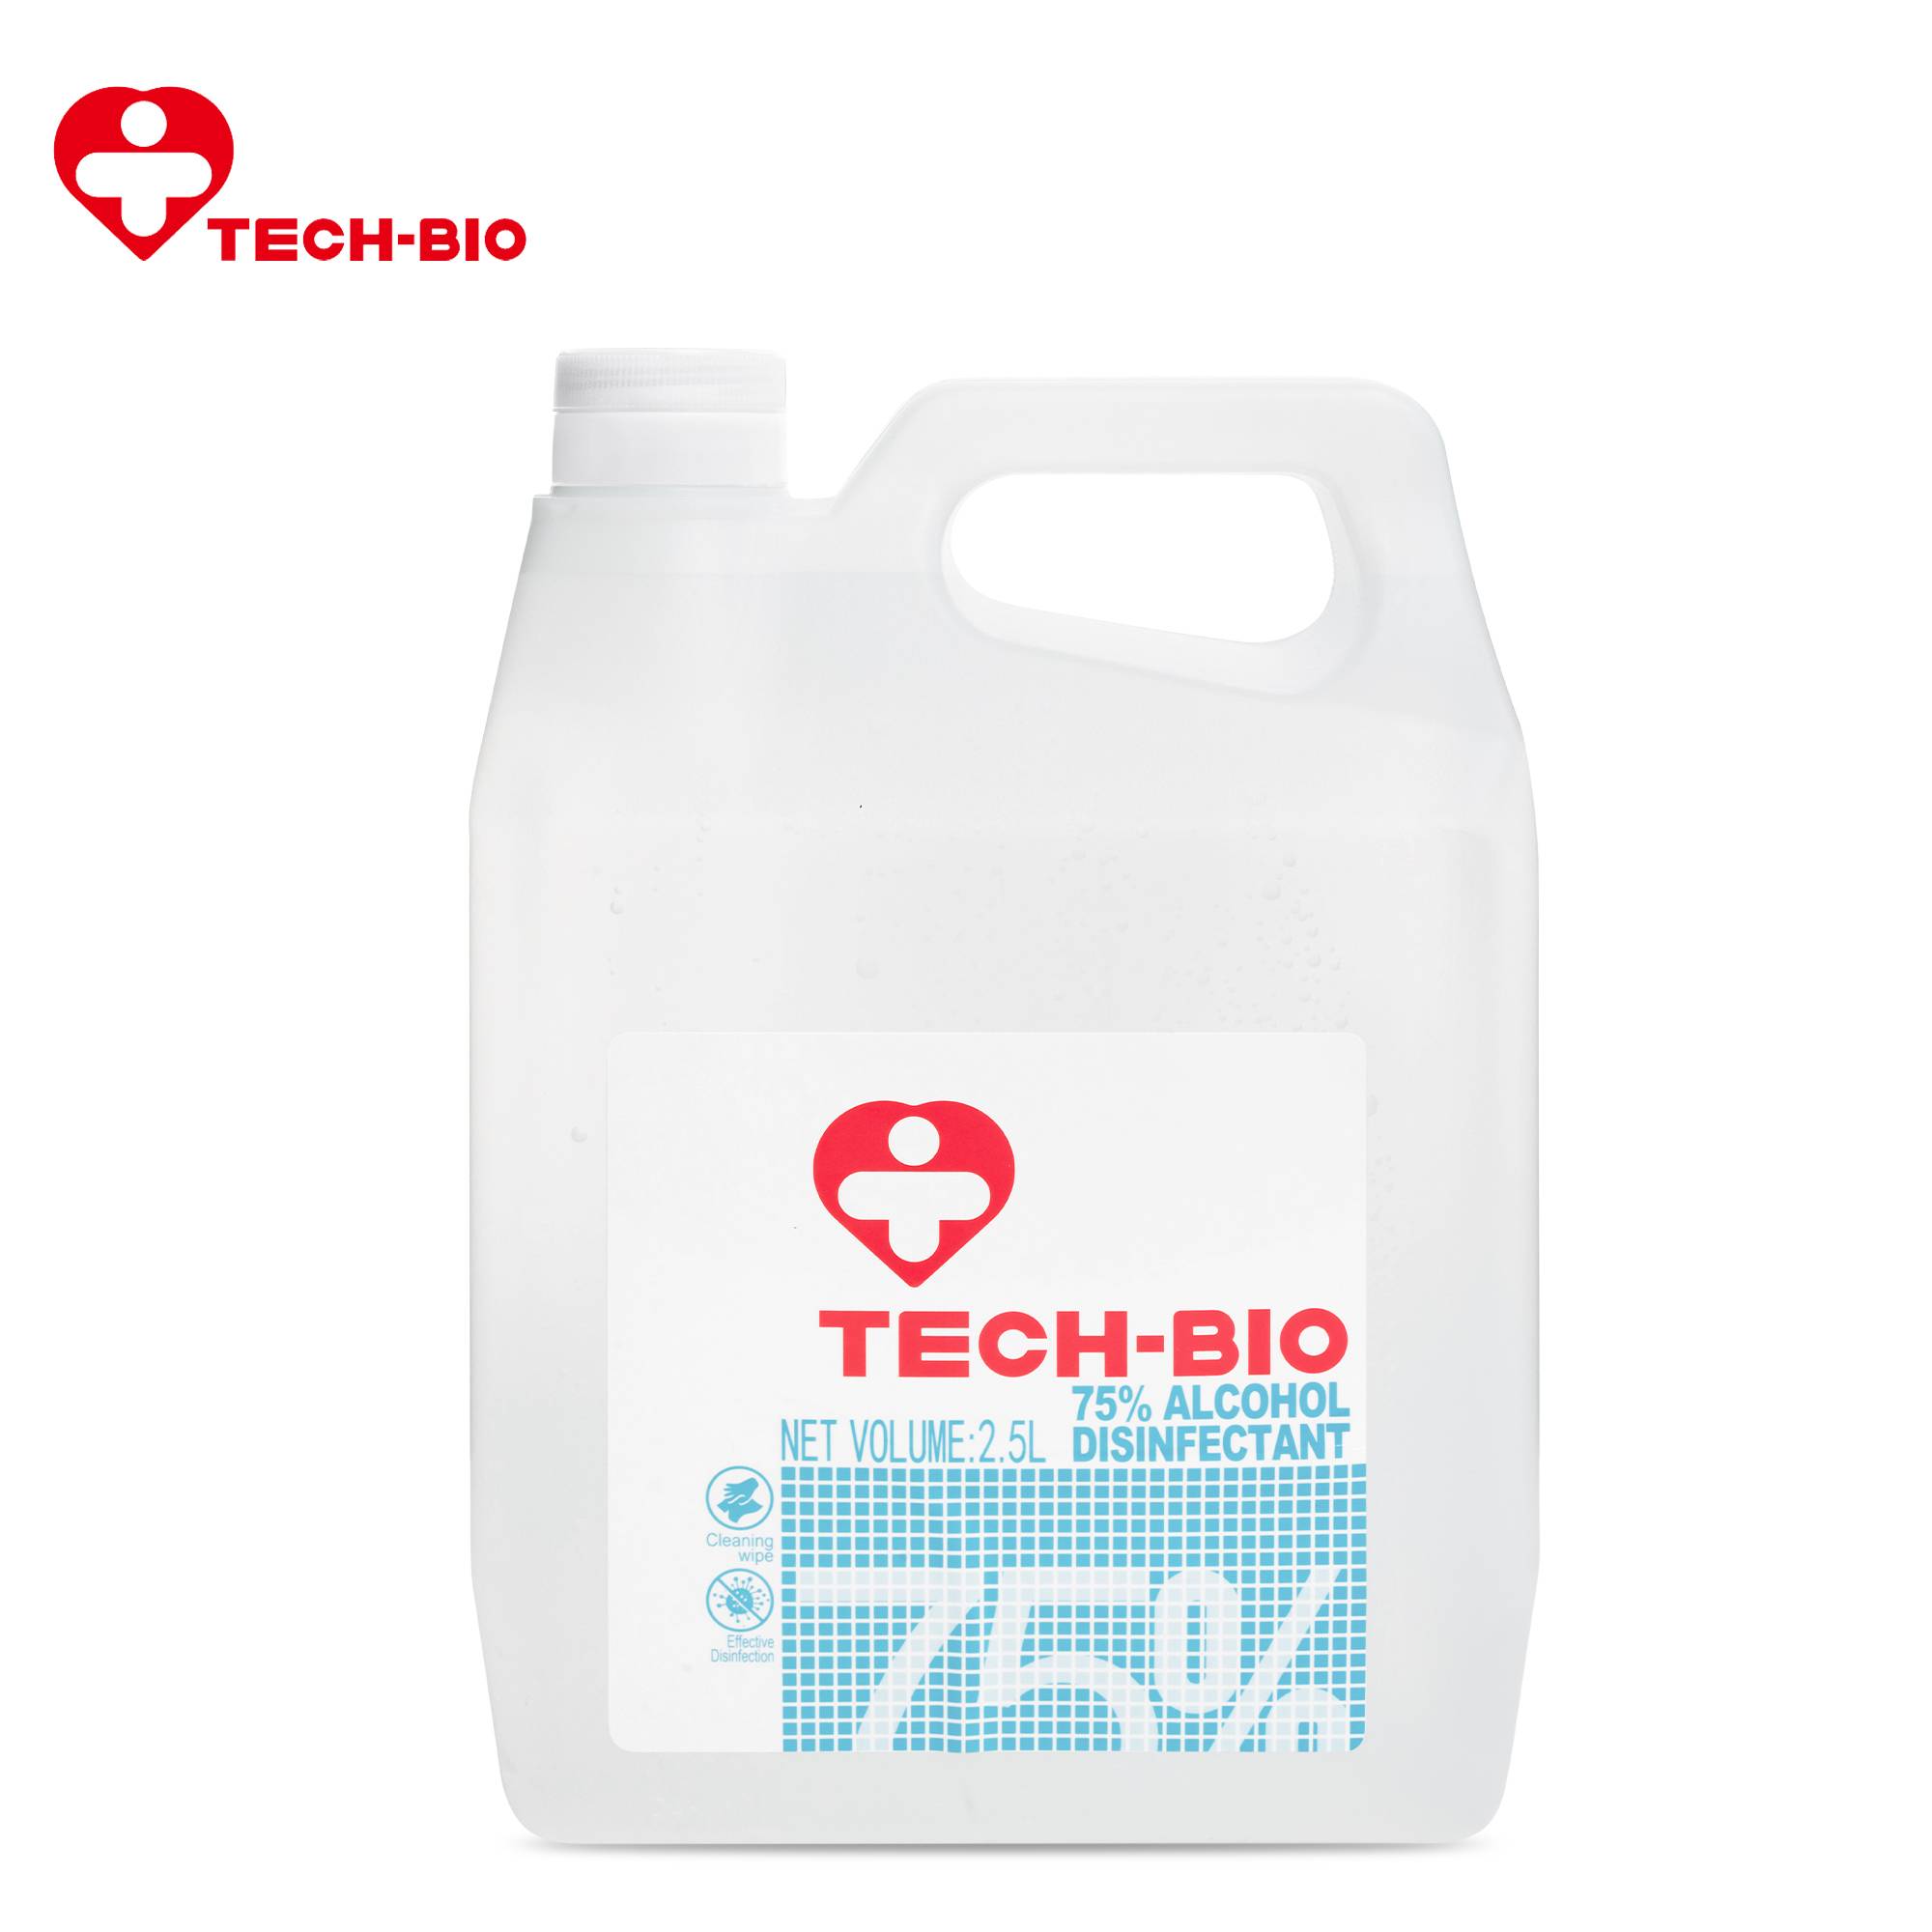 2.5L 75 Alcohol Disinfectant TECH-BIO